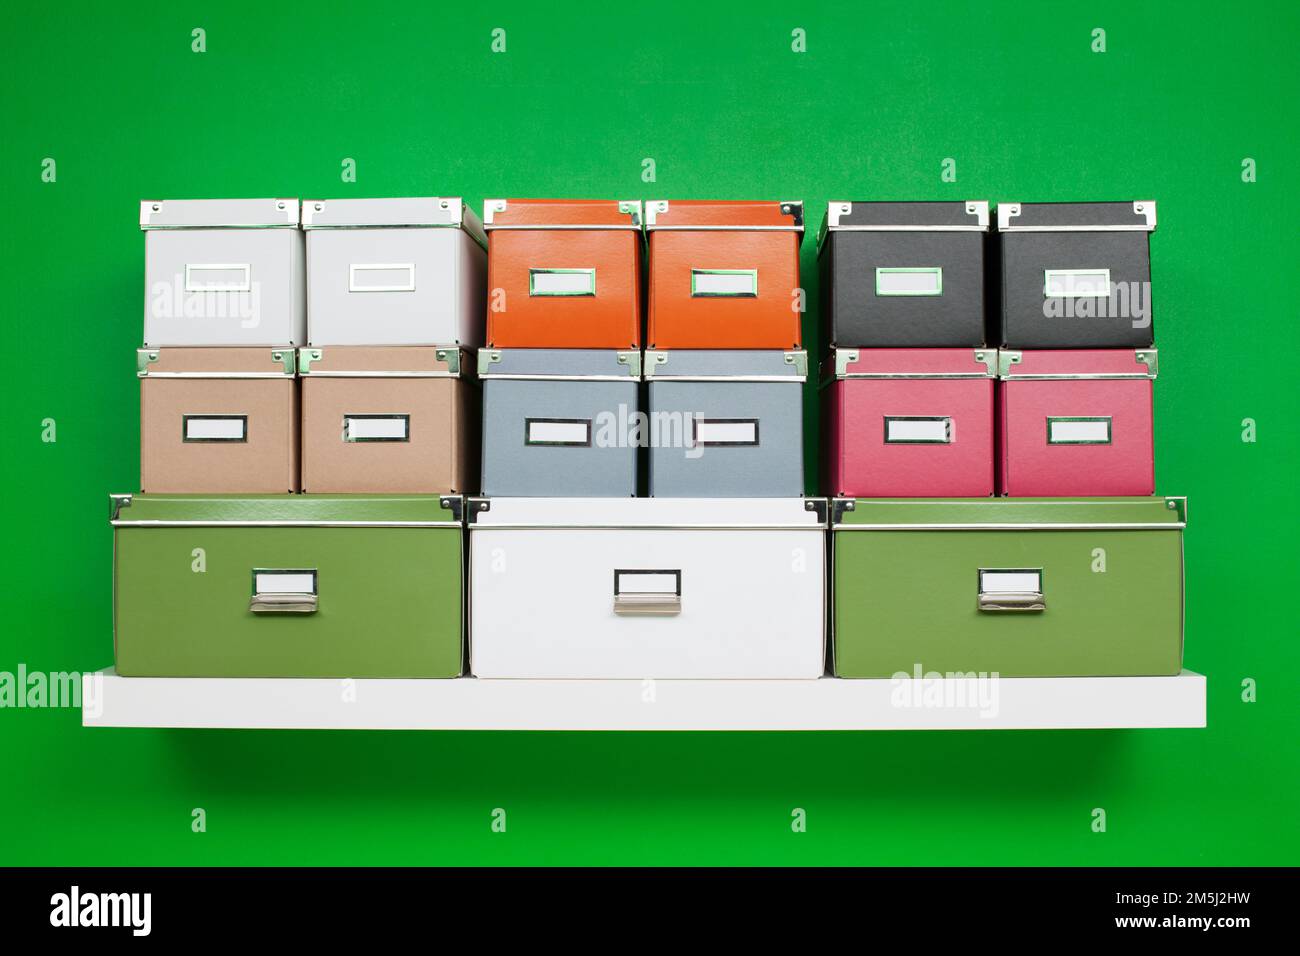 Ordentliche Reihen von Boxen in verschiedenen Farben und Größen auf einem weißen Bücherregal an einer grünen Wand. Minimalistische Zusammensetzung zum Thema Organisation Stockfoto